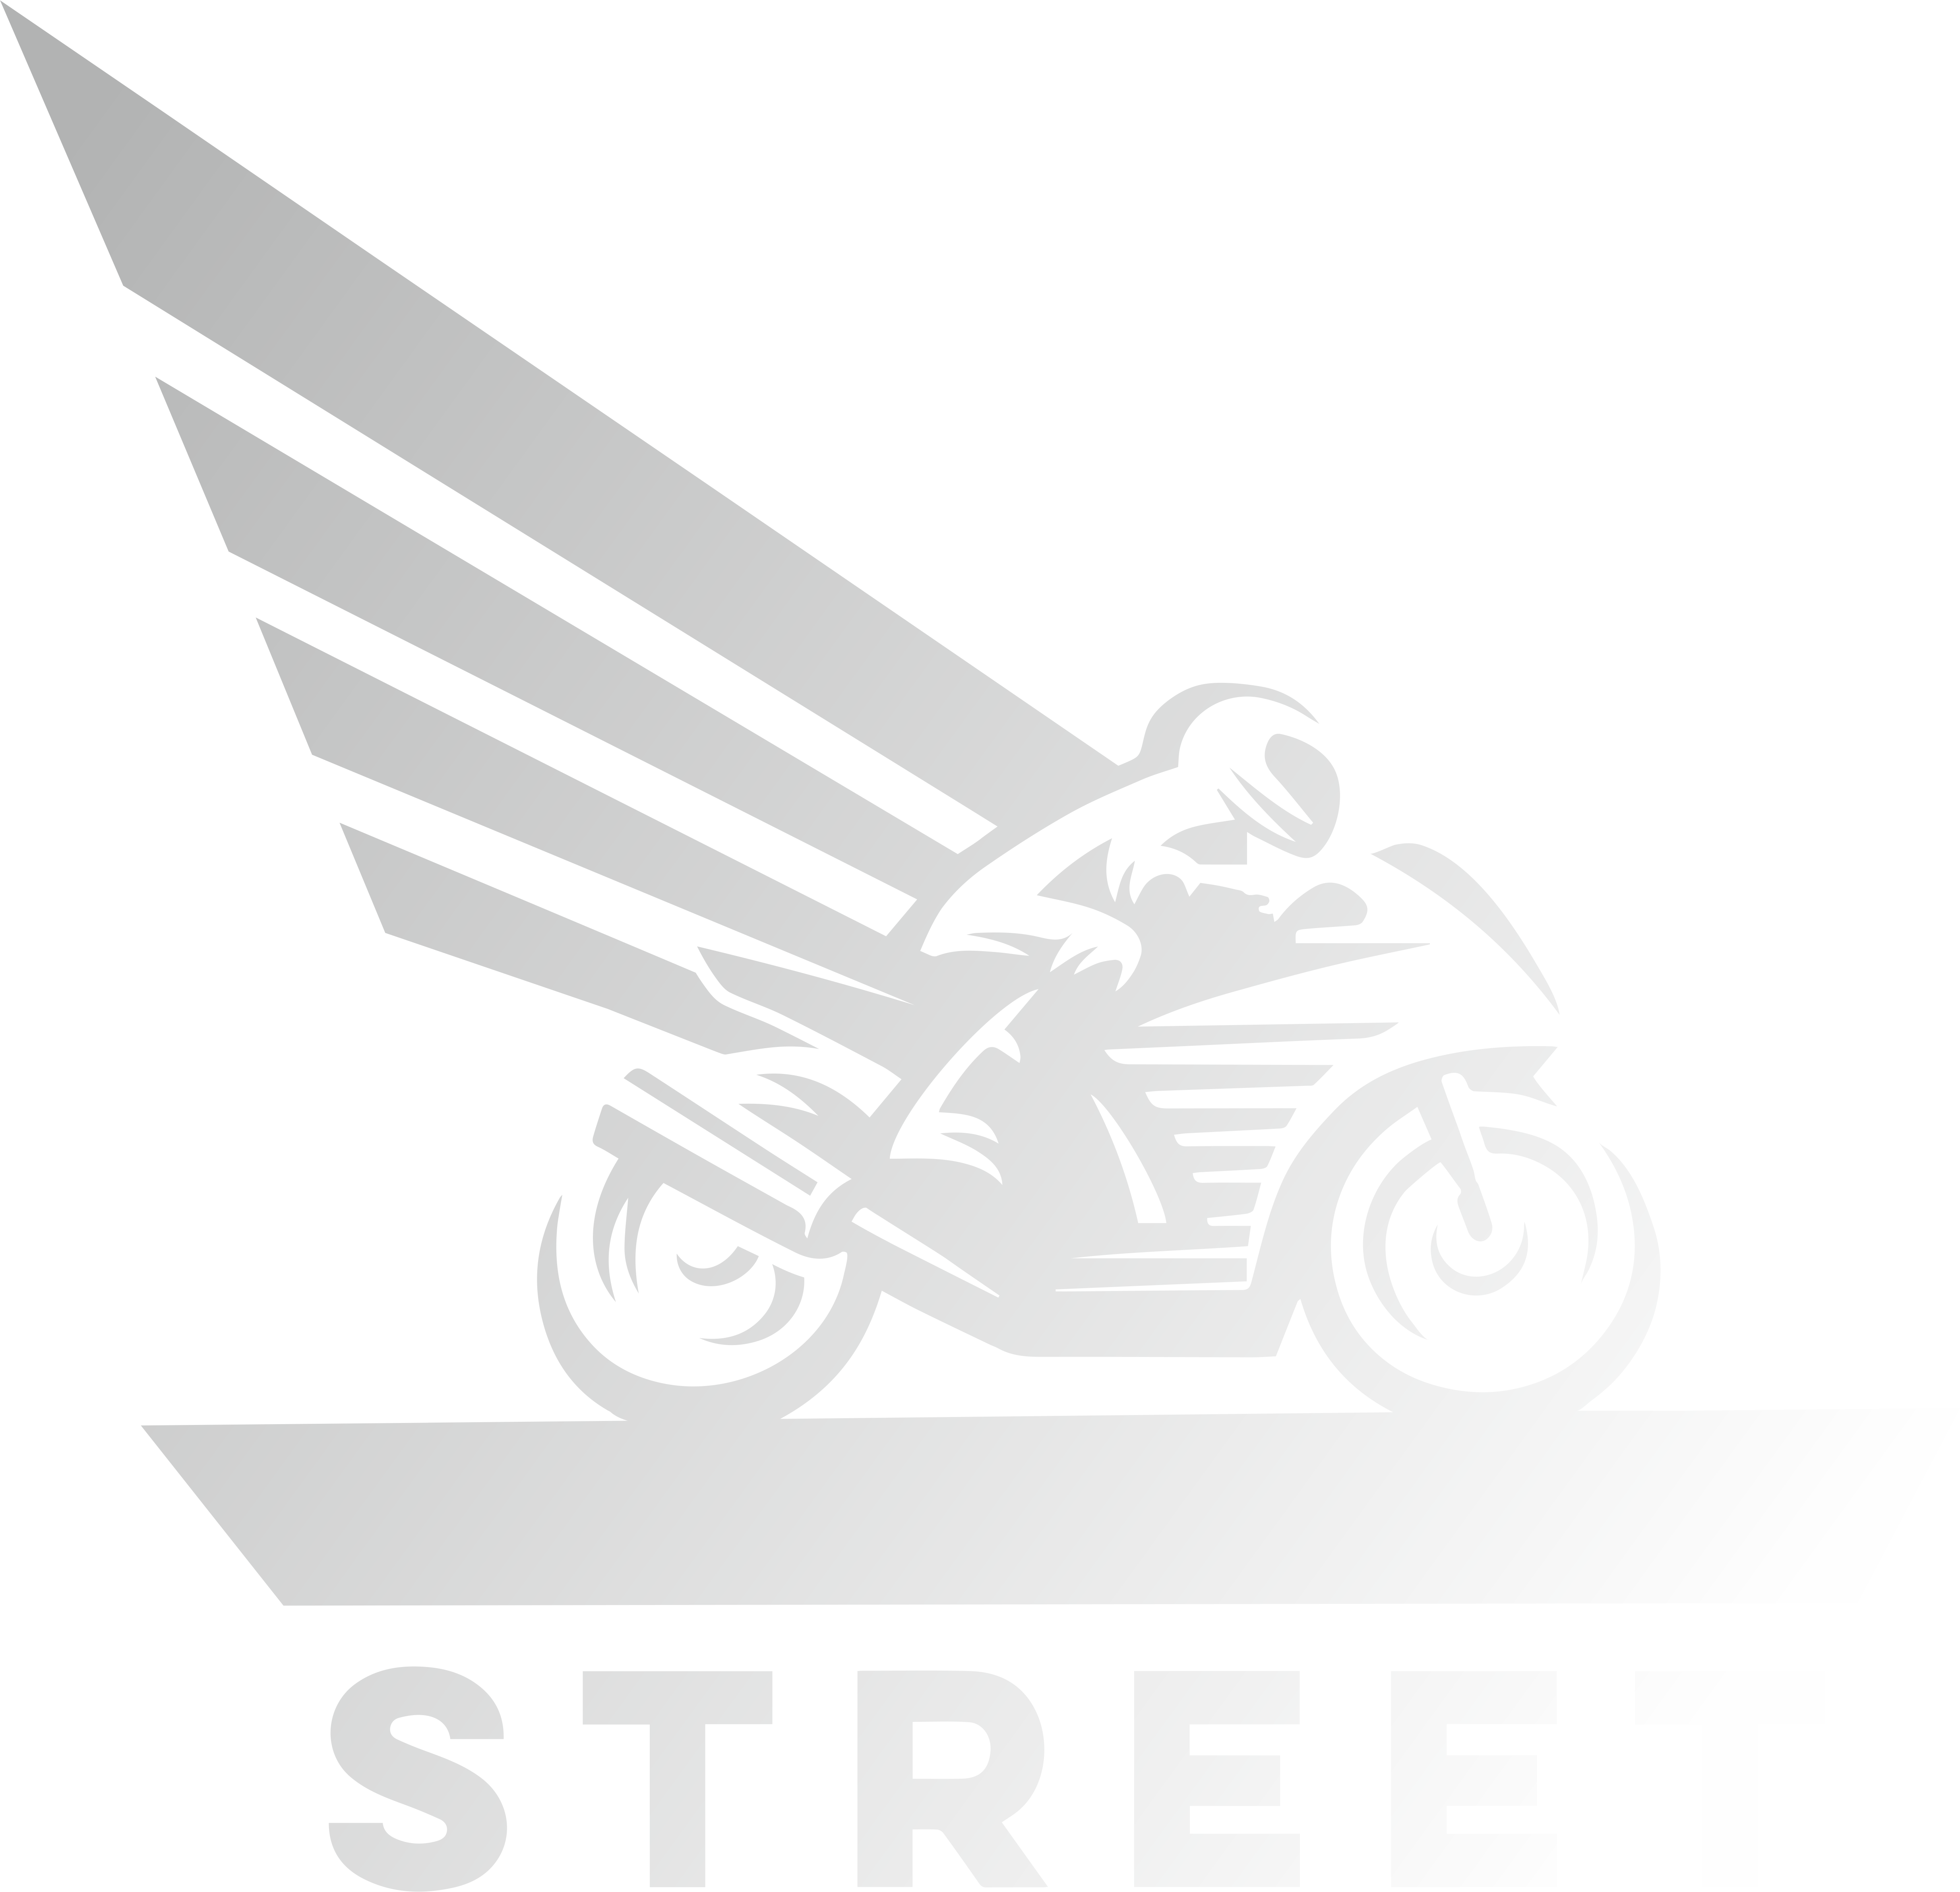 Street26